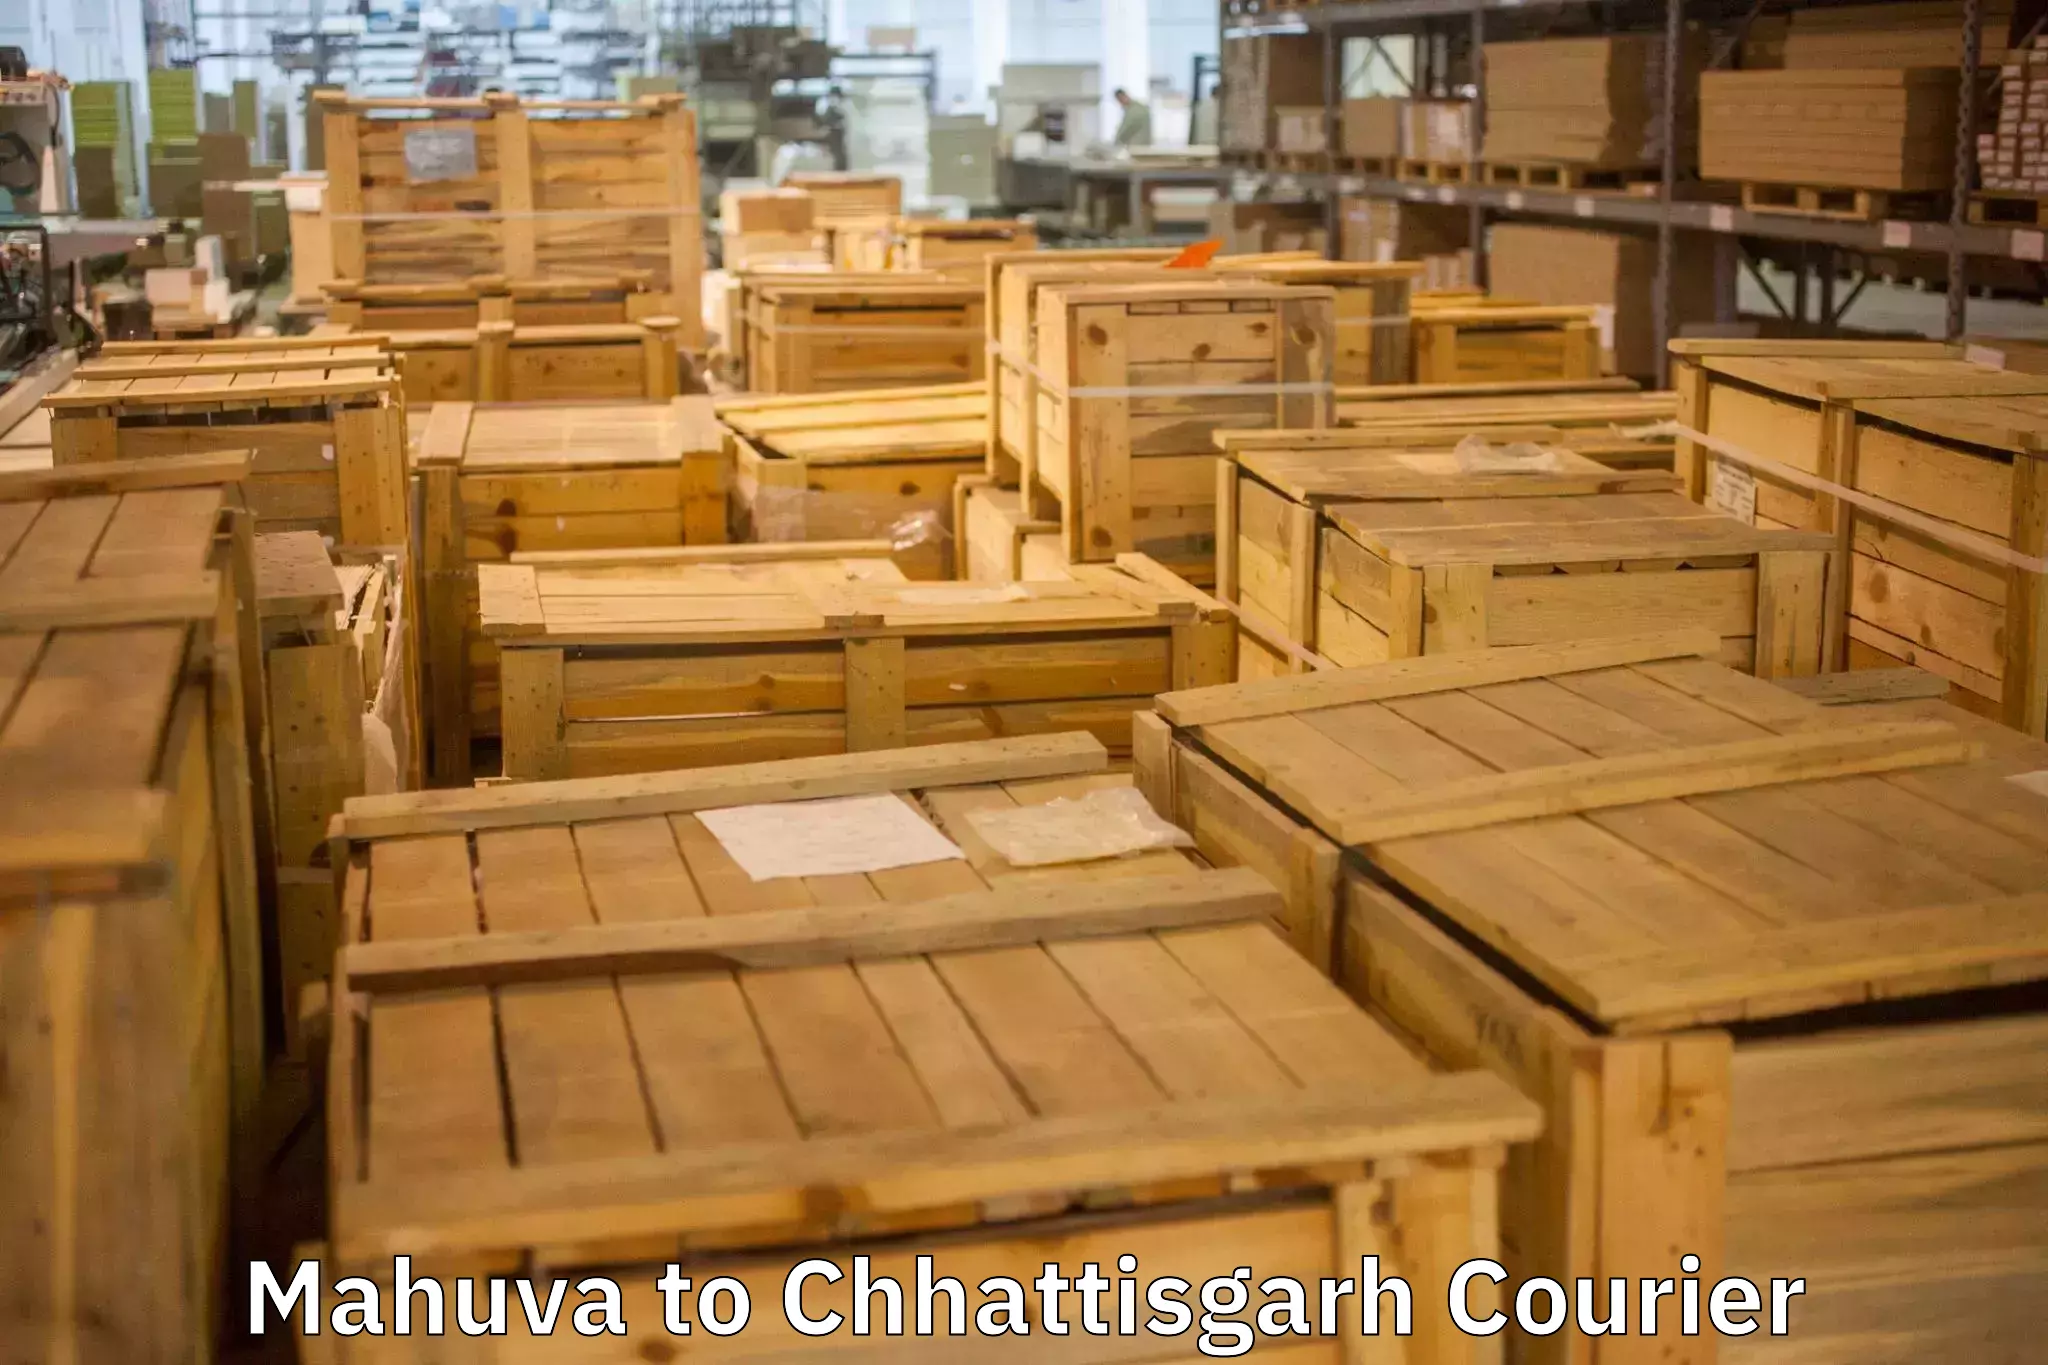 Customized household moving Mahuva to Chhattisgarh